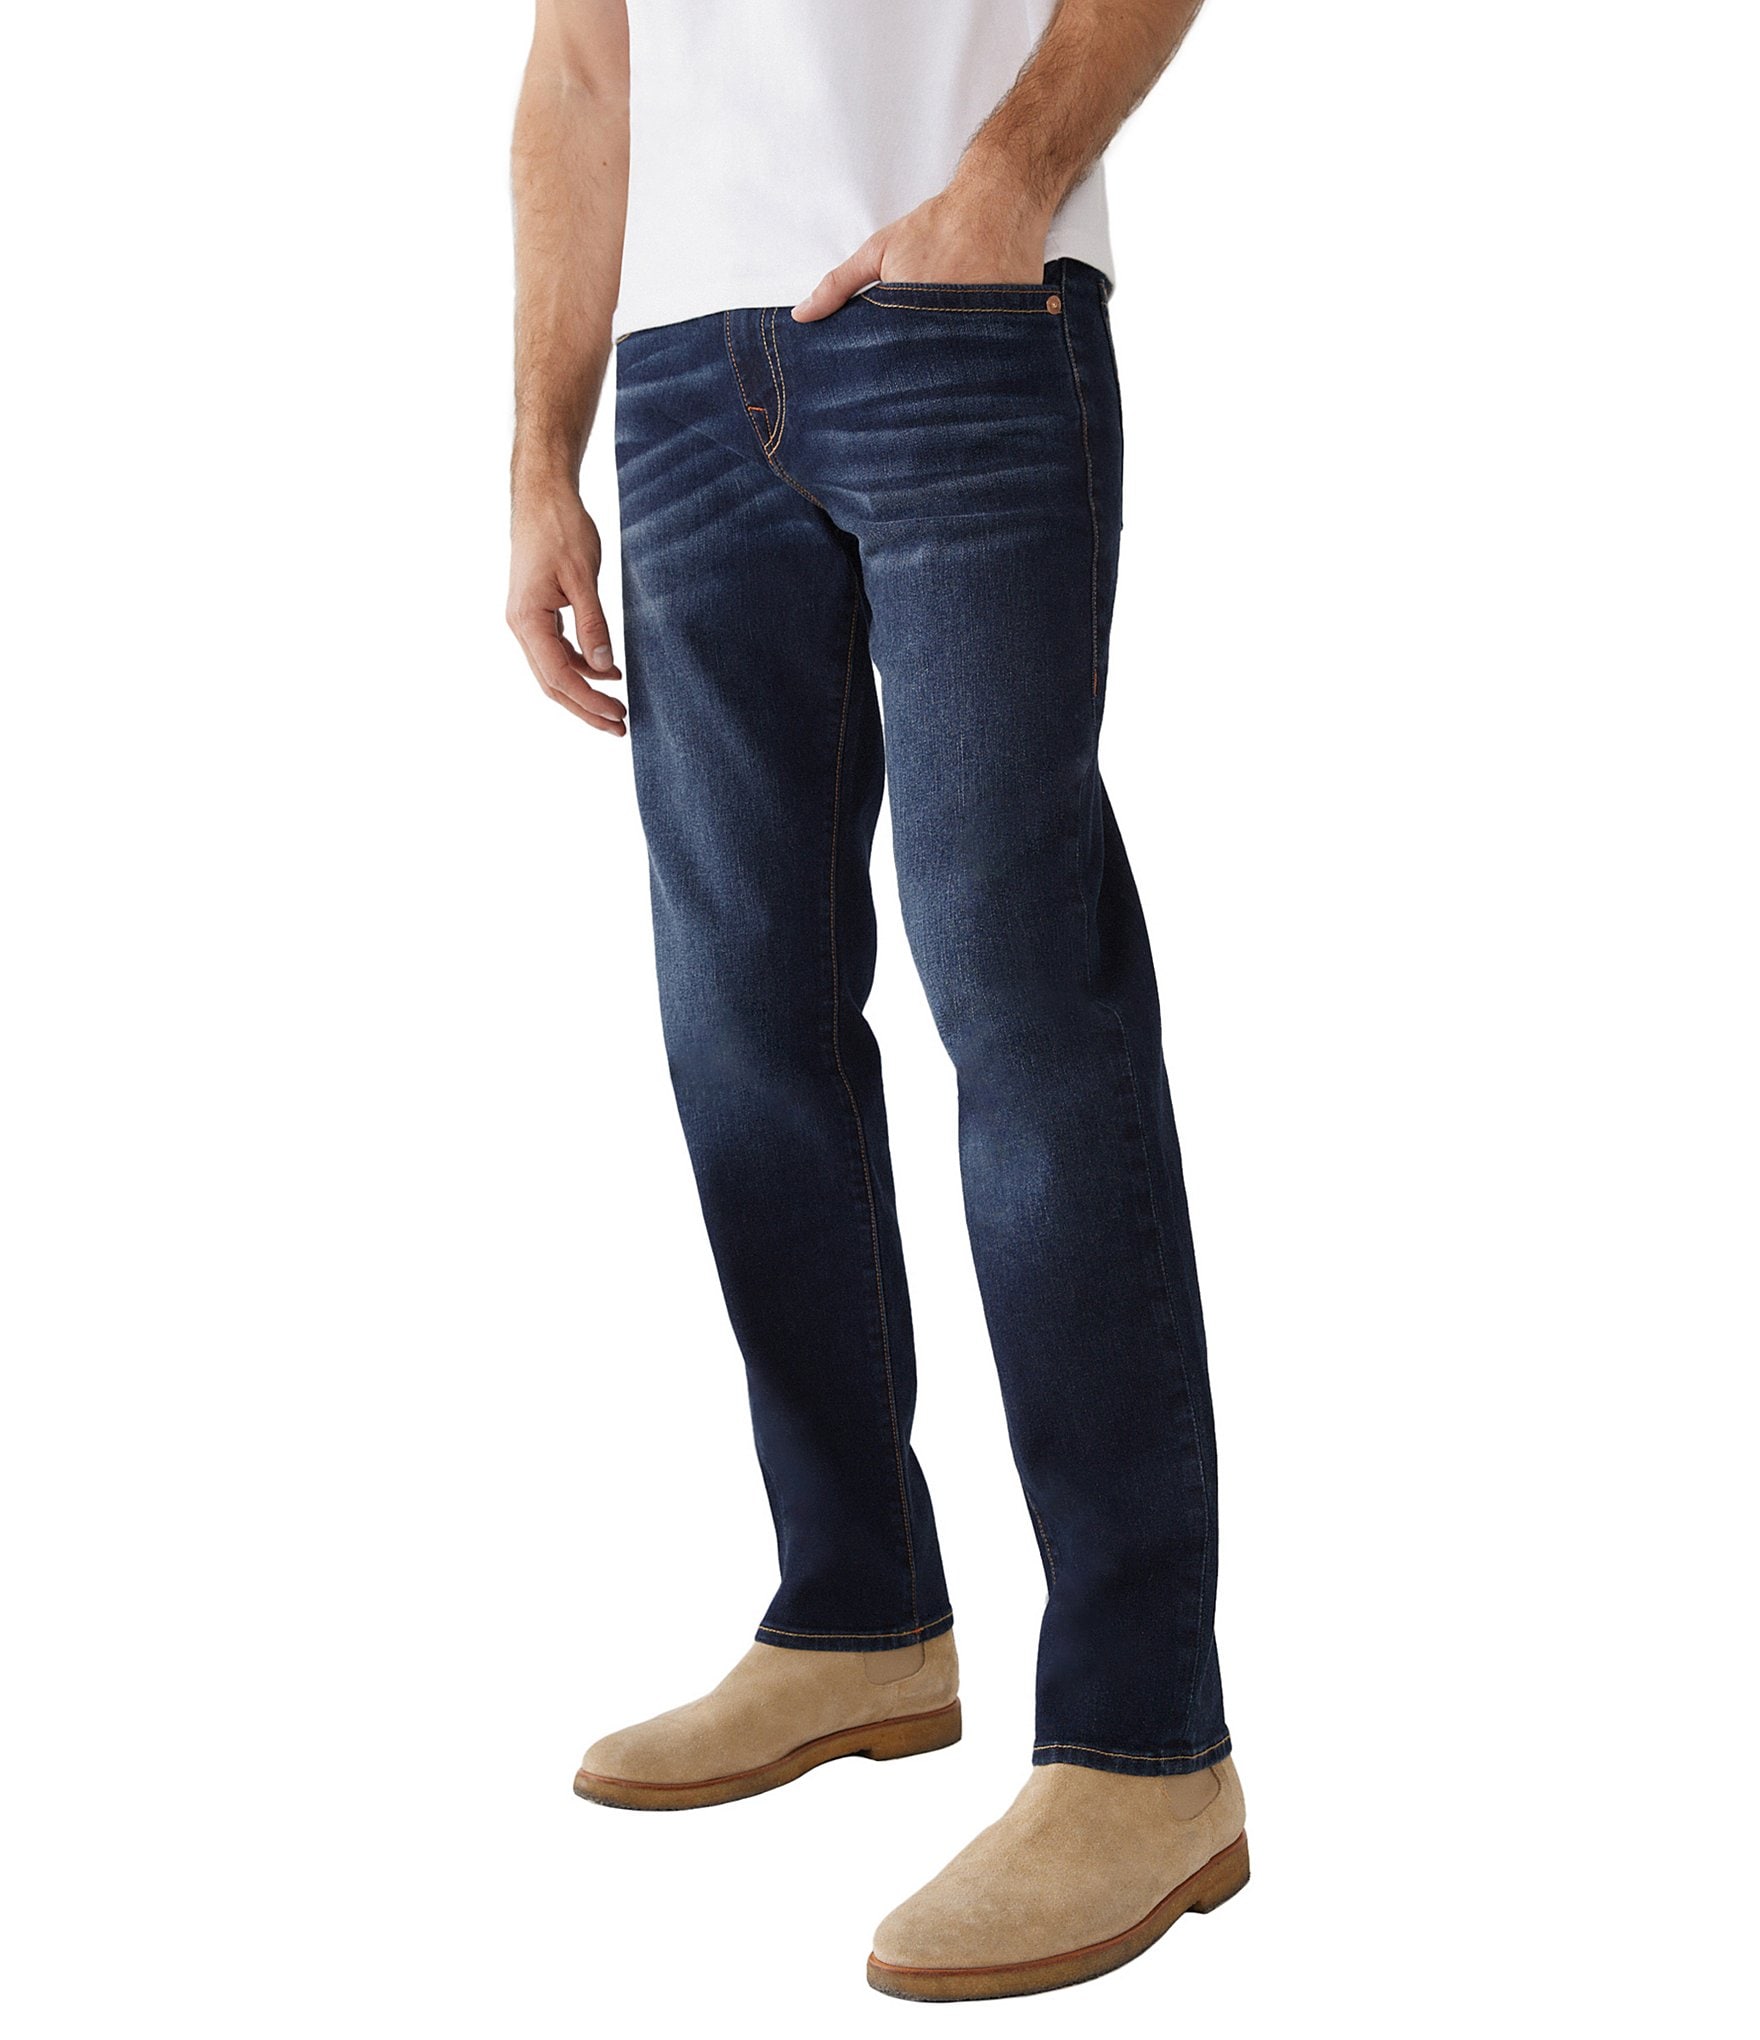 True Religion Geno Classic Slim-Fit Jeans | Dillard's